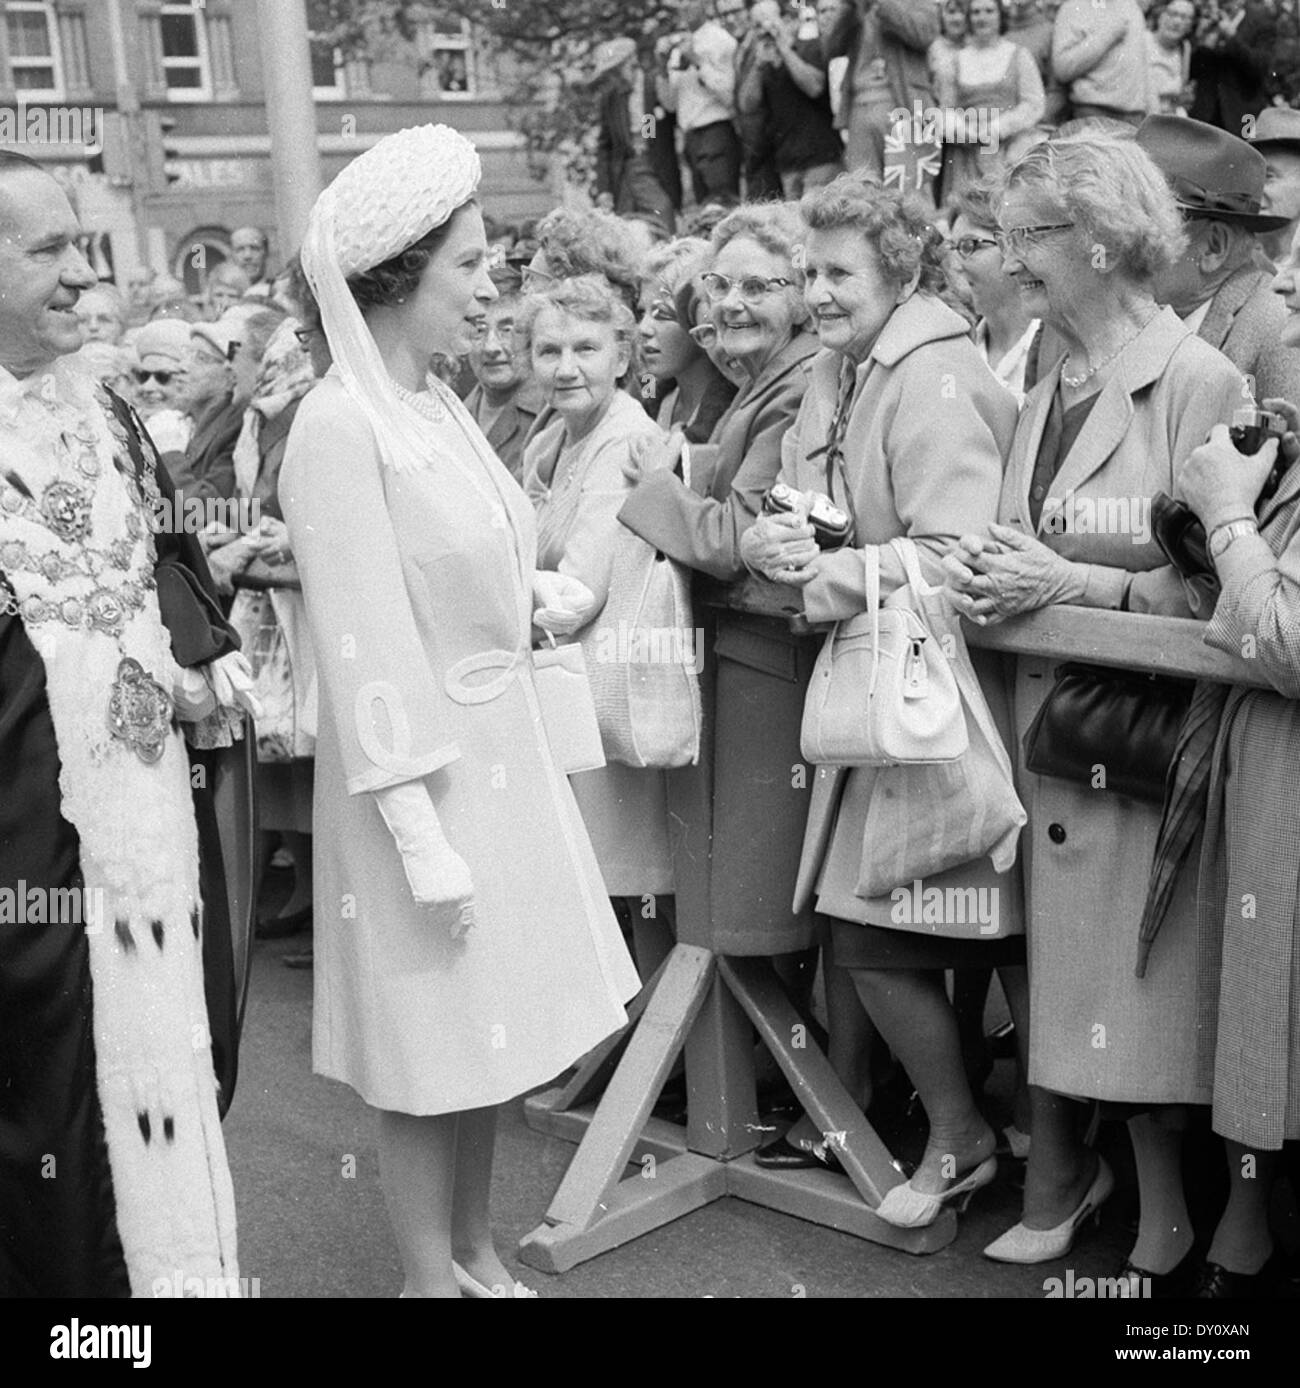 La regina Elisabetta "aborigeno di' arrivando a Sydney Town Hall per un civic reception durante il tour per la Captain Cook bi-le celebrazioni del centenario, 21 apr 1970 / fotografo maurie wilmott Foto Stock